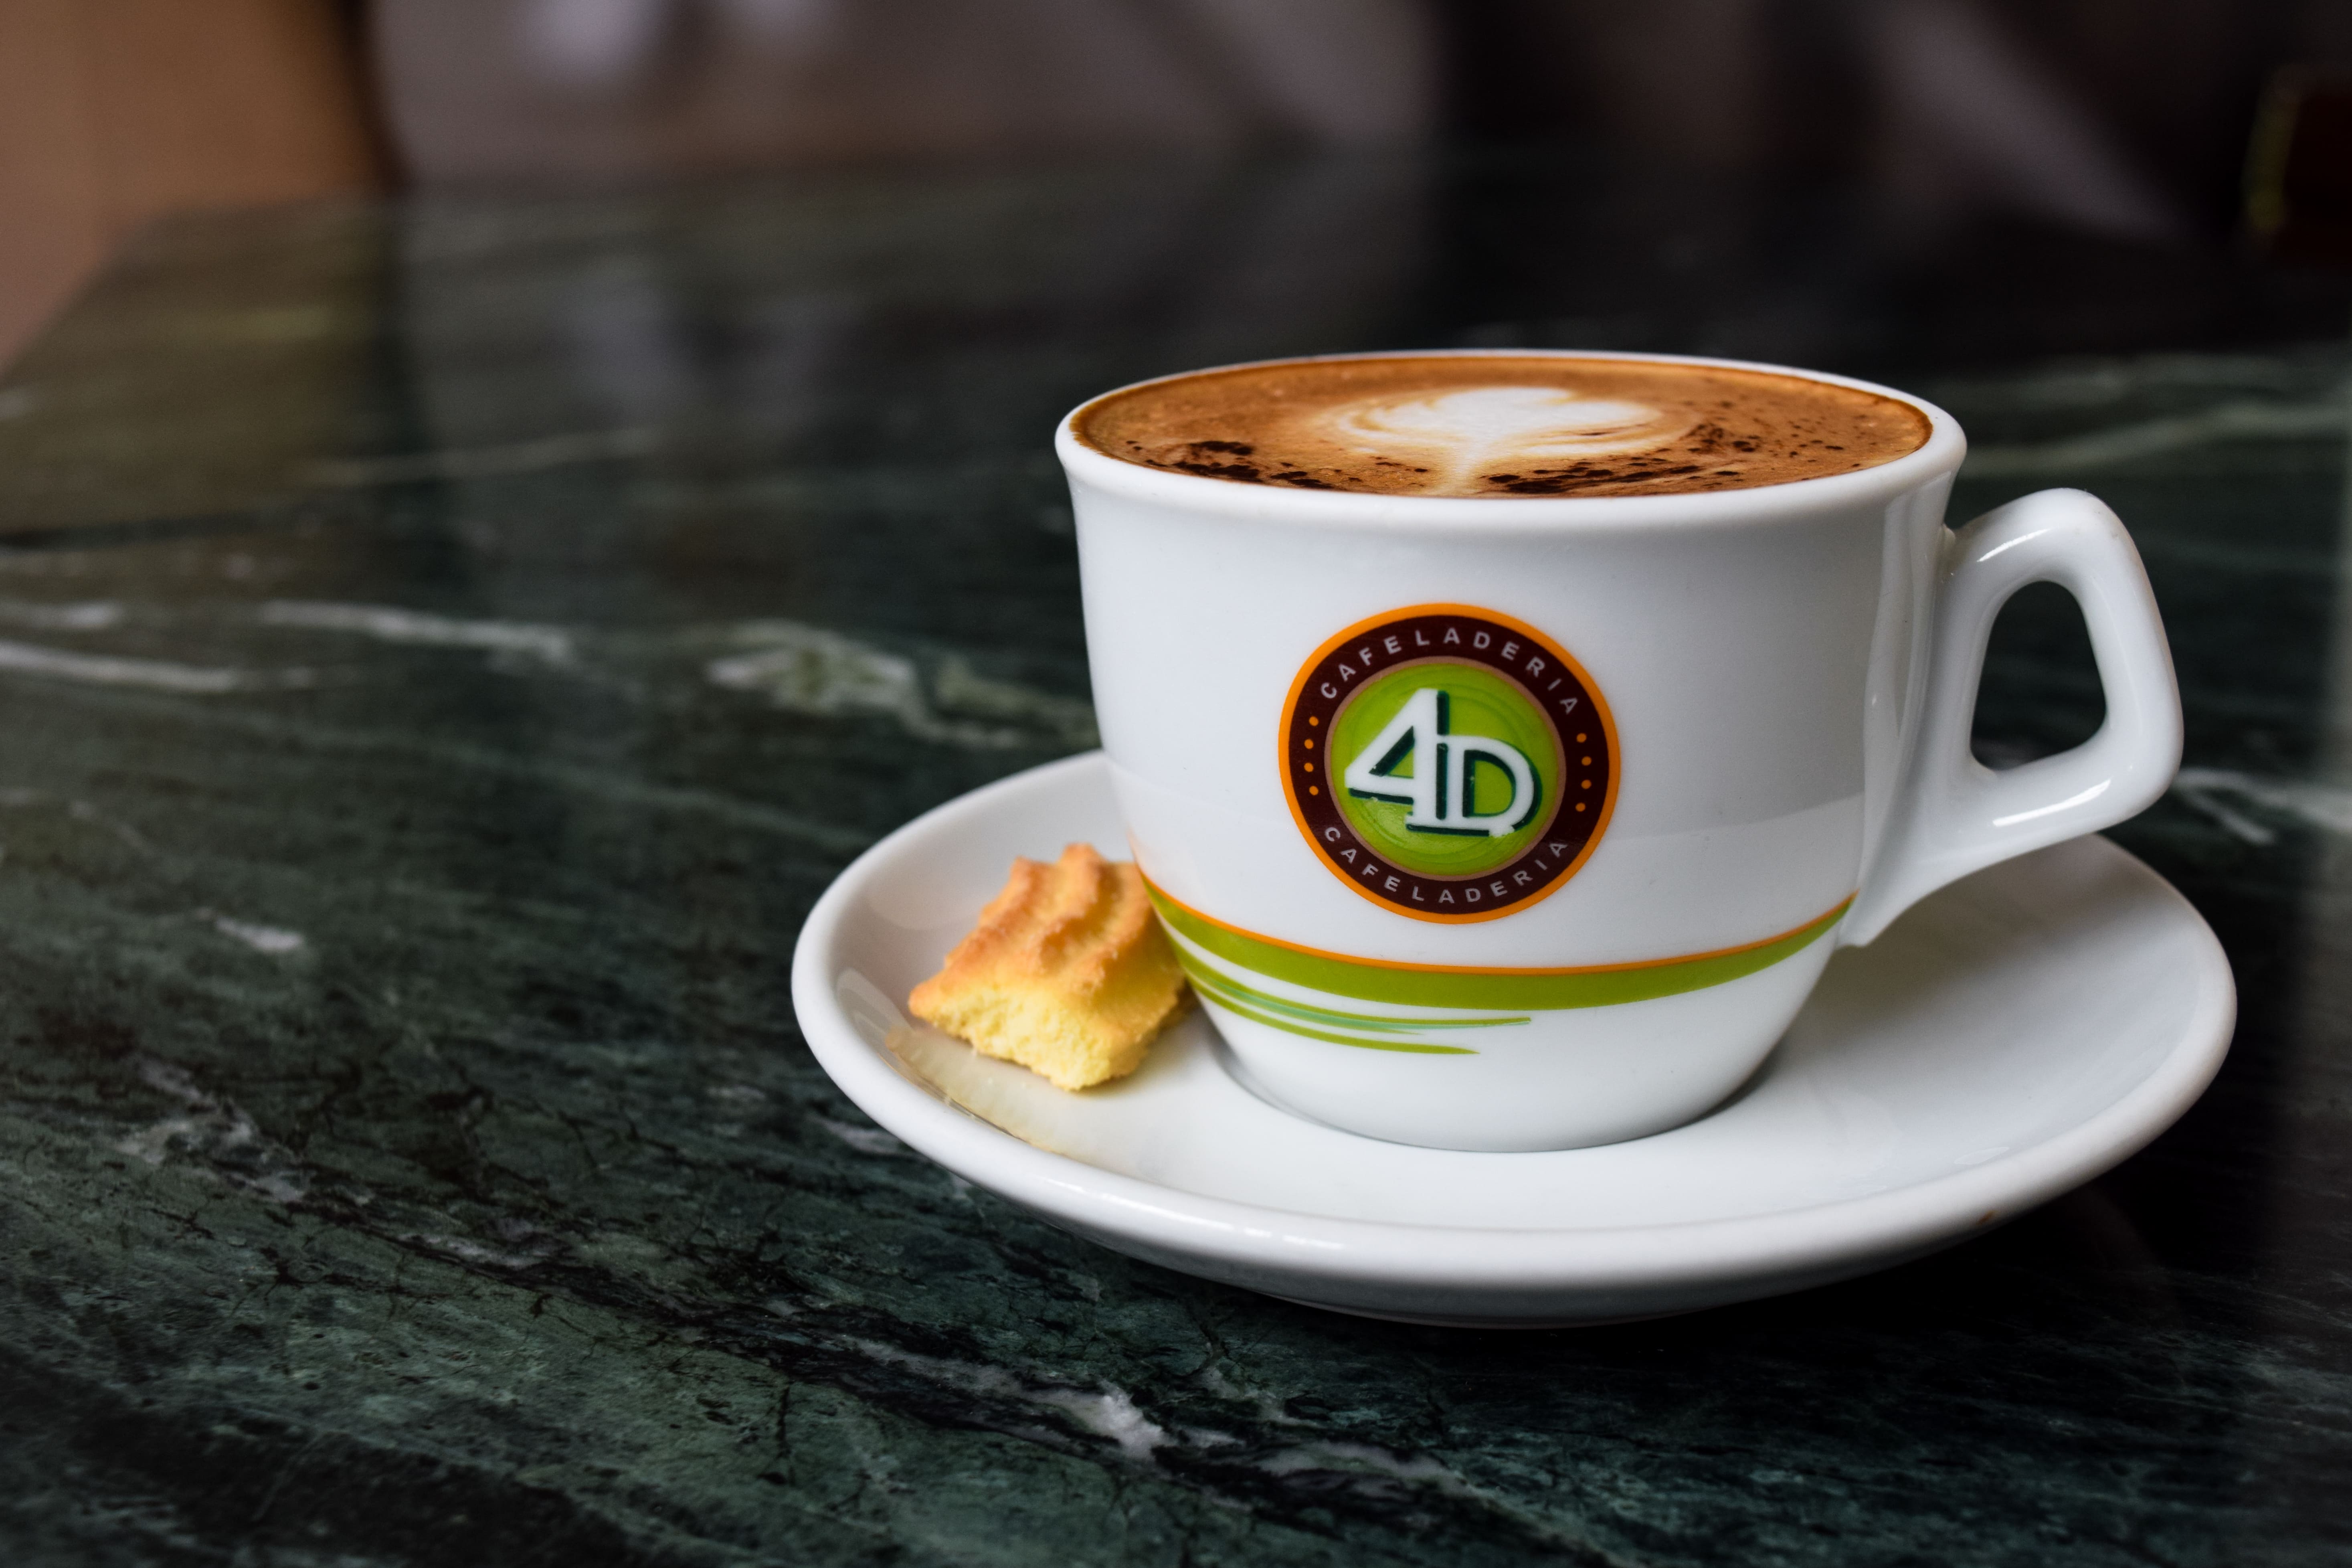 Celebra el Día del Café Peruano con el segundo café gratis en 4D